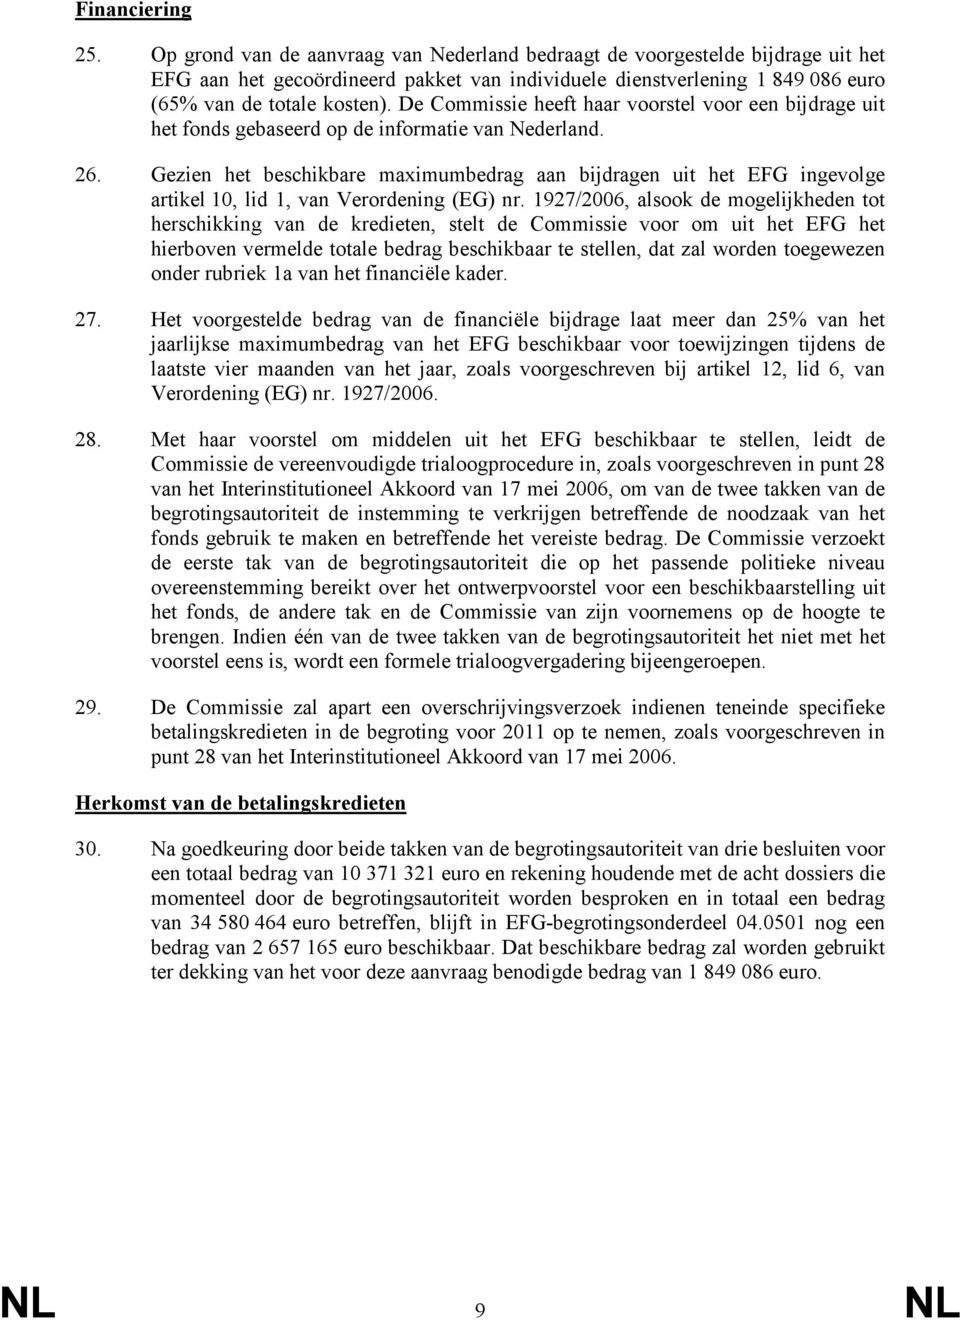 De Commissie heeft haar voorstel voor een bijdrage uit het fonds gebaseerd op de informatie van Nederland. 26.